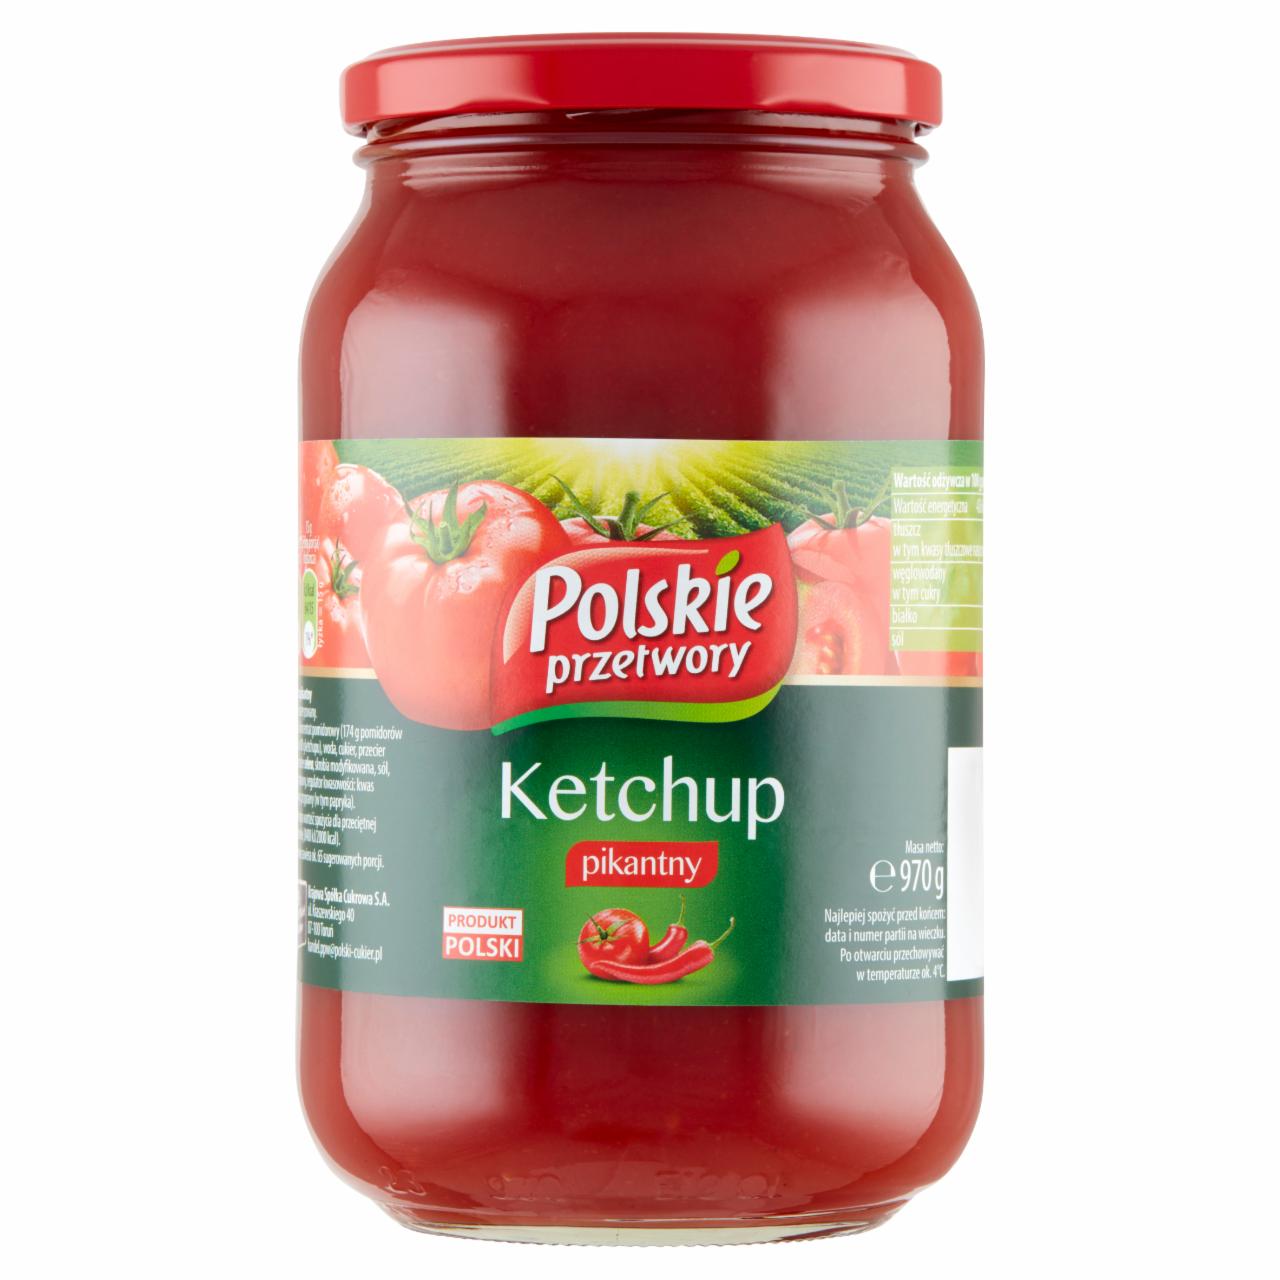 Zdjęcia - Polskie przetwory Ketchup pikantny 970 g